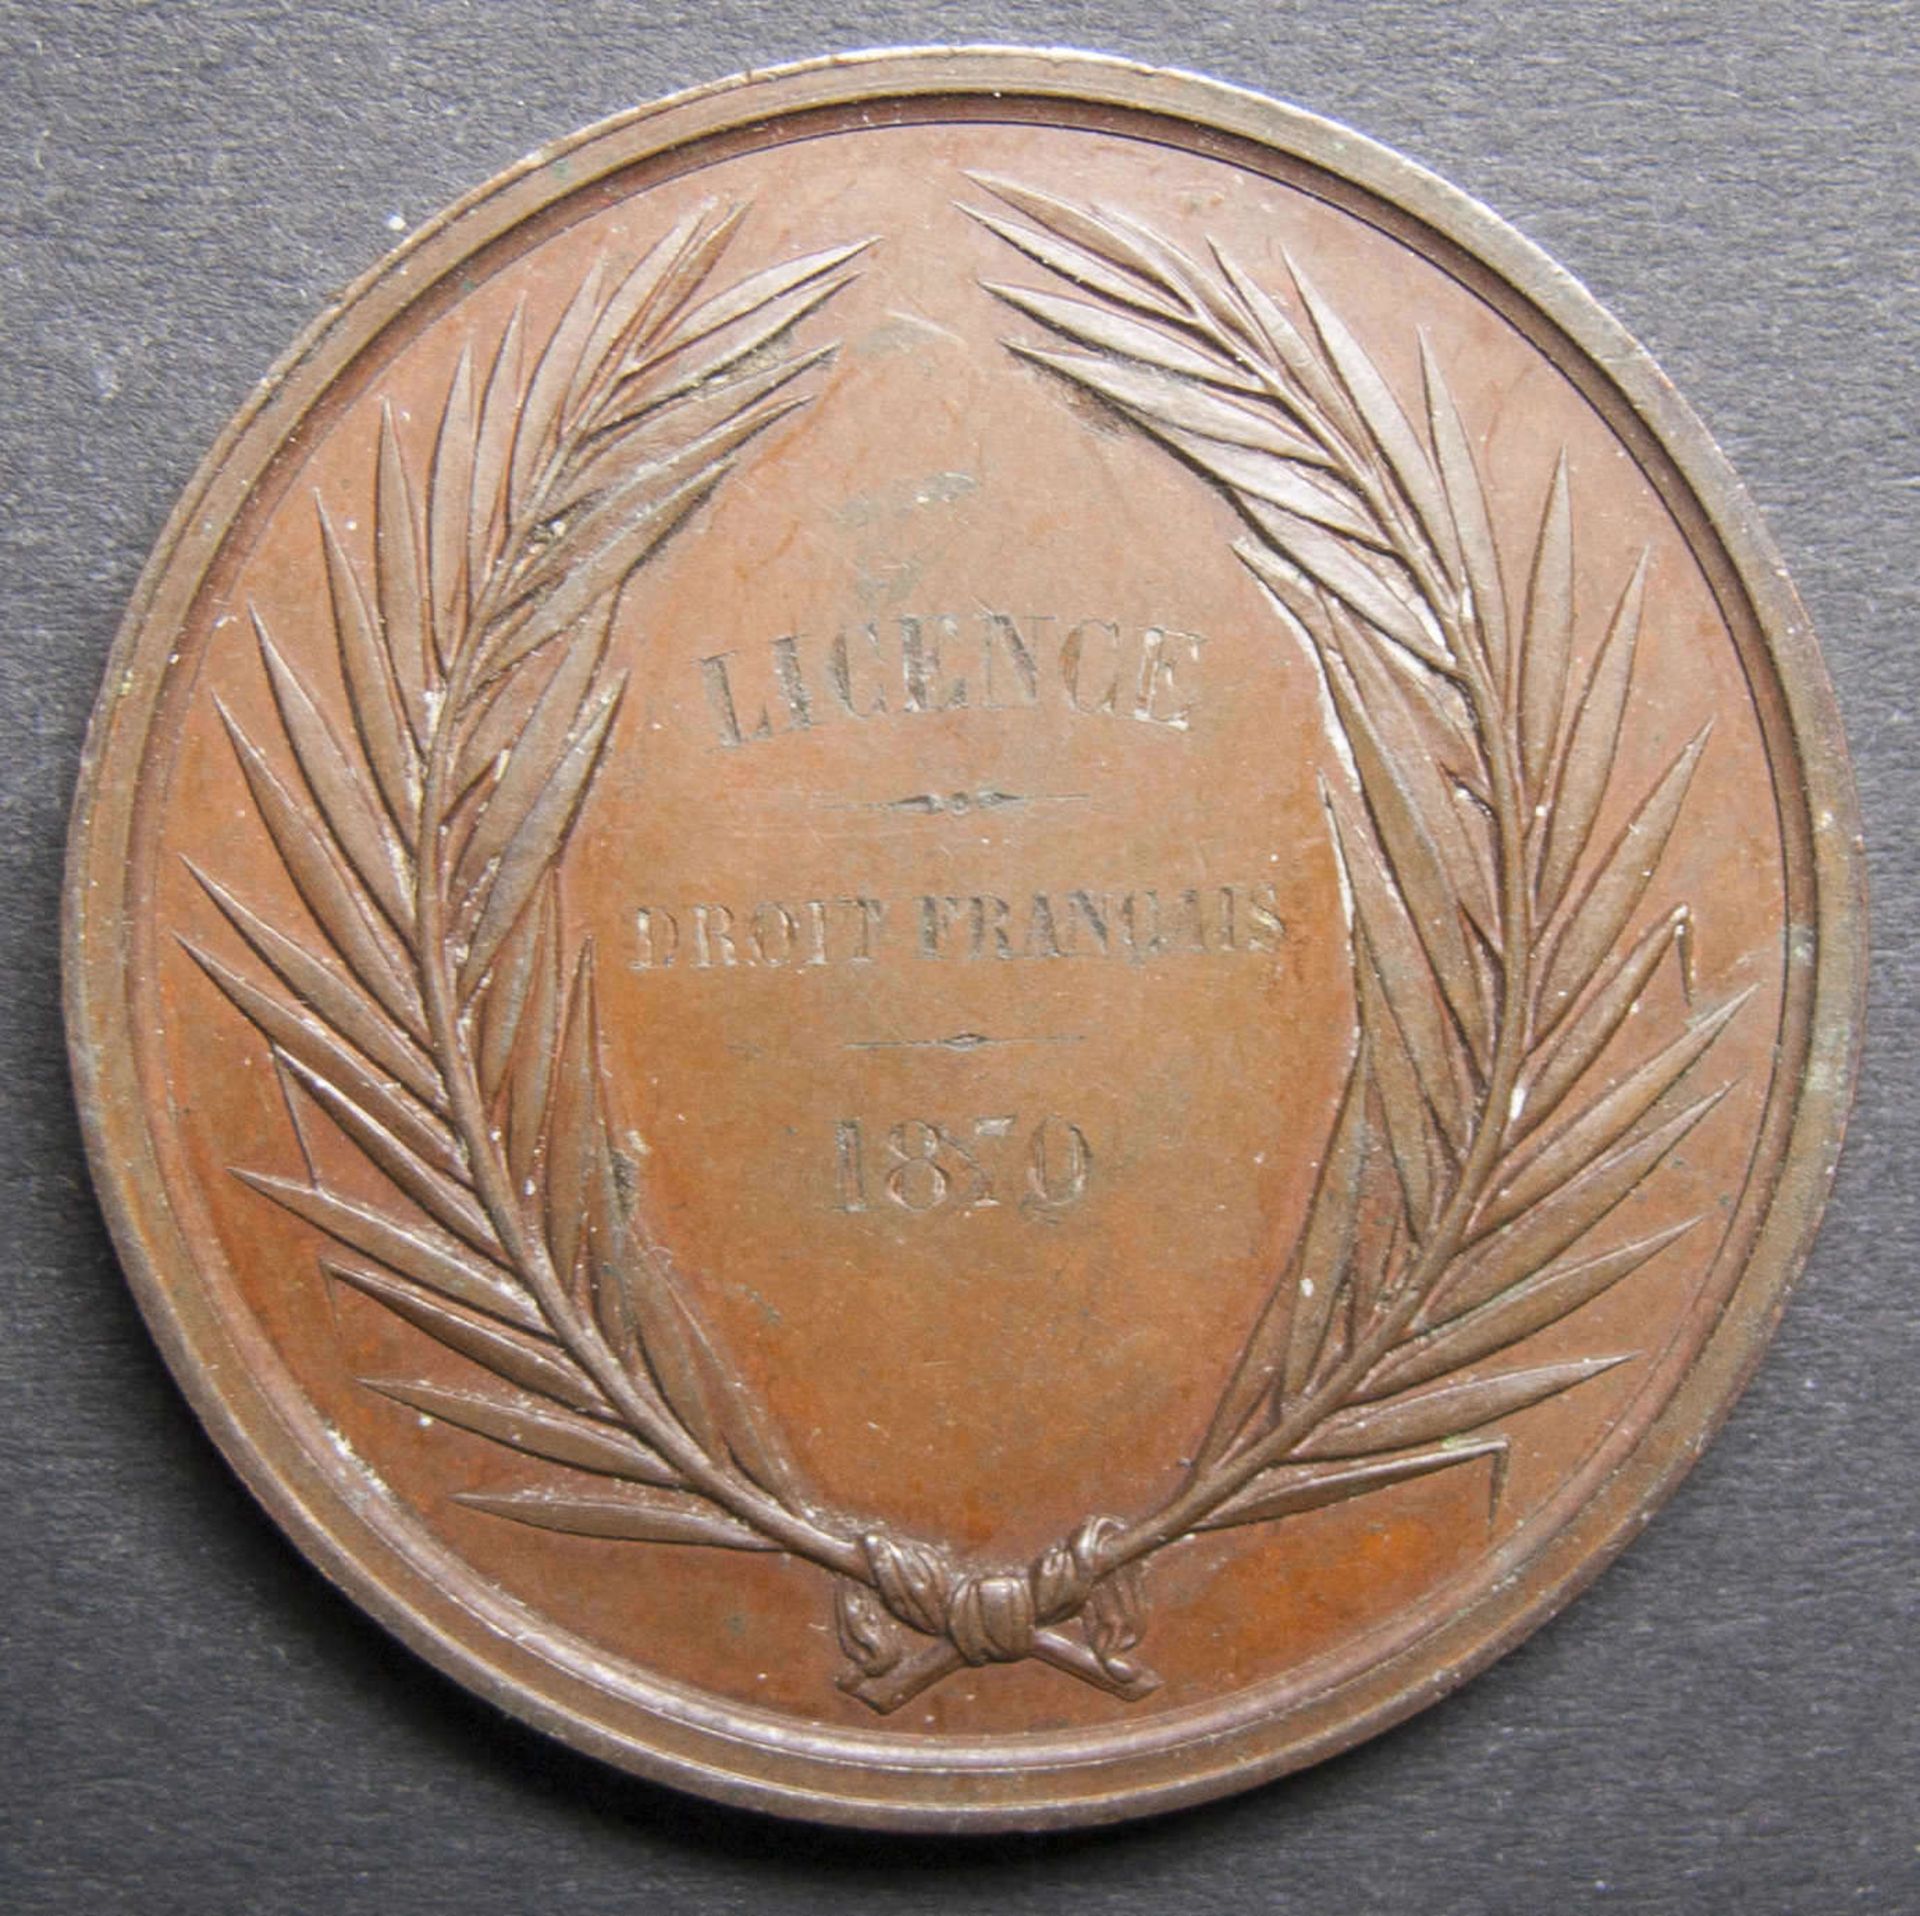 Medaille Licence de Droit francais.1870. Faculte de droit A´Aix. Kupfer.Medal License de Droit - Image 2 of 2